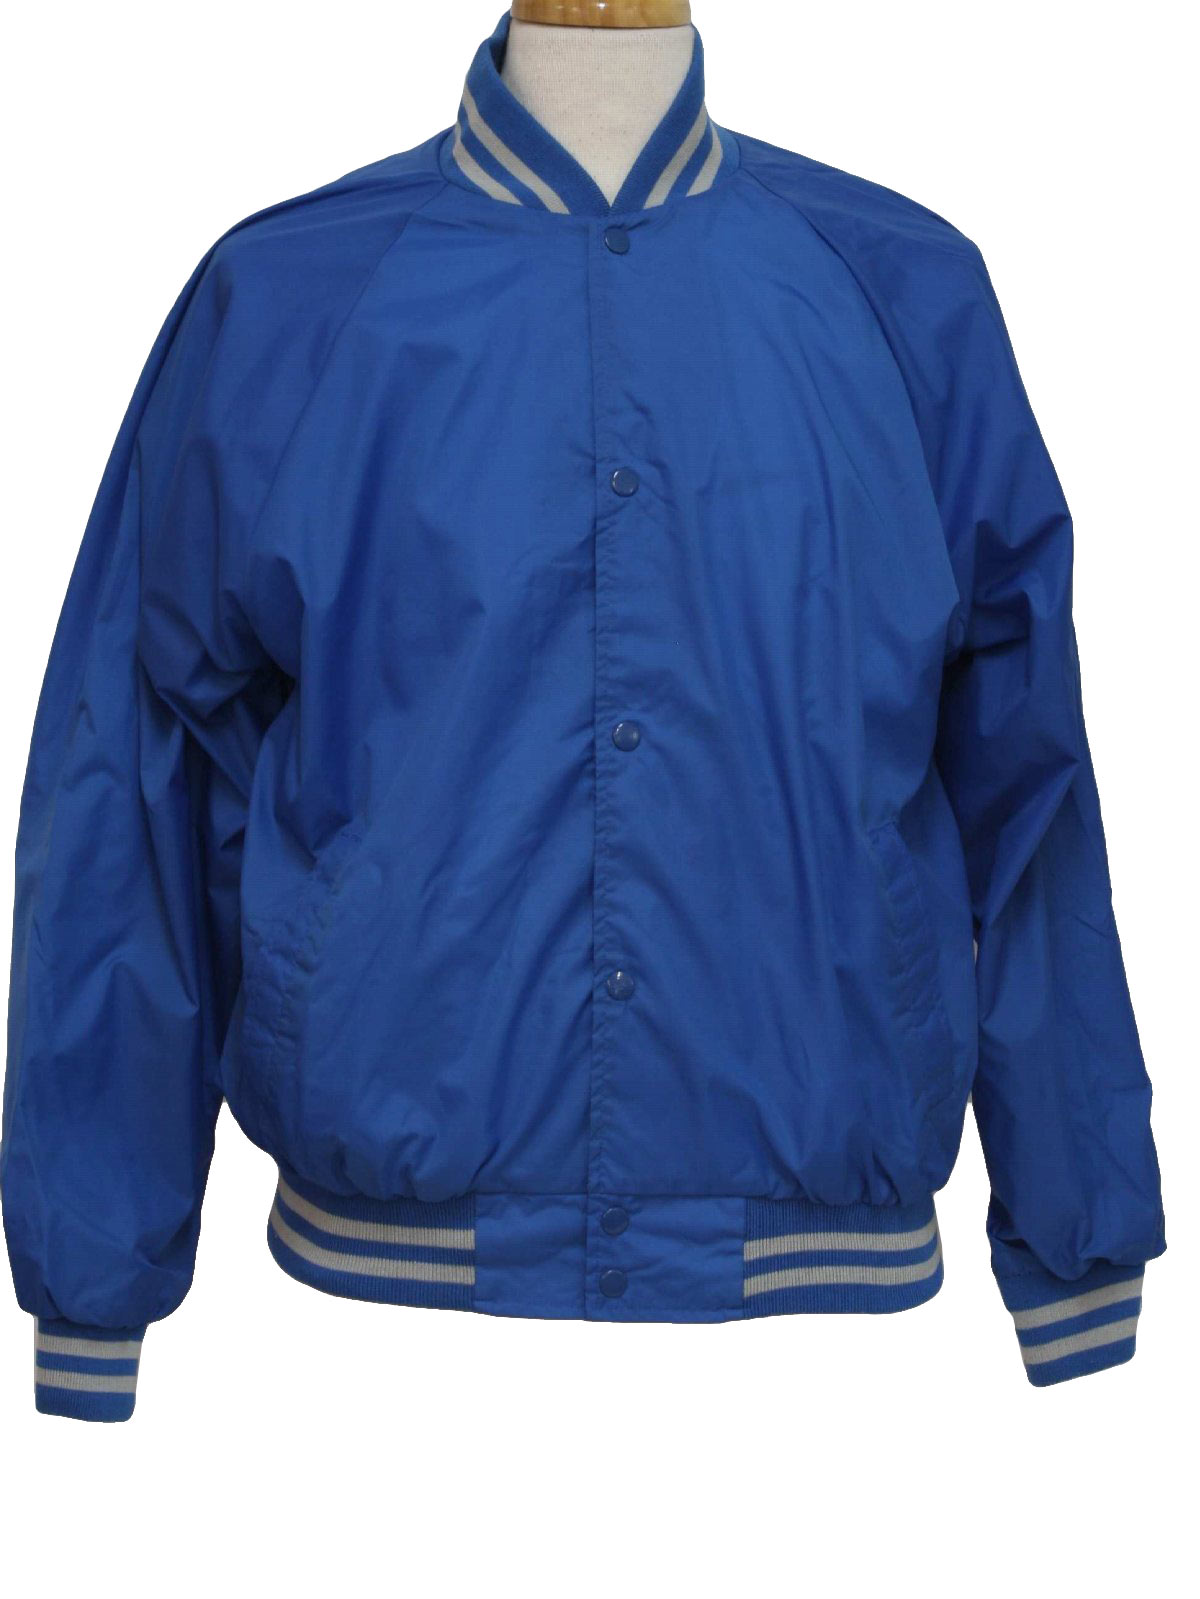 1980's Retro Jacket: 80s -Haband- Mens medium blue and light grey nylon ...